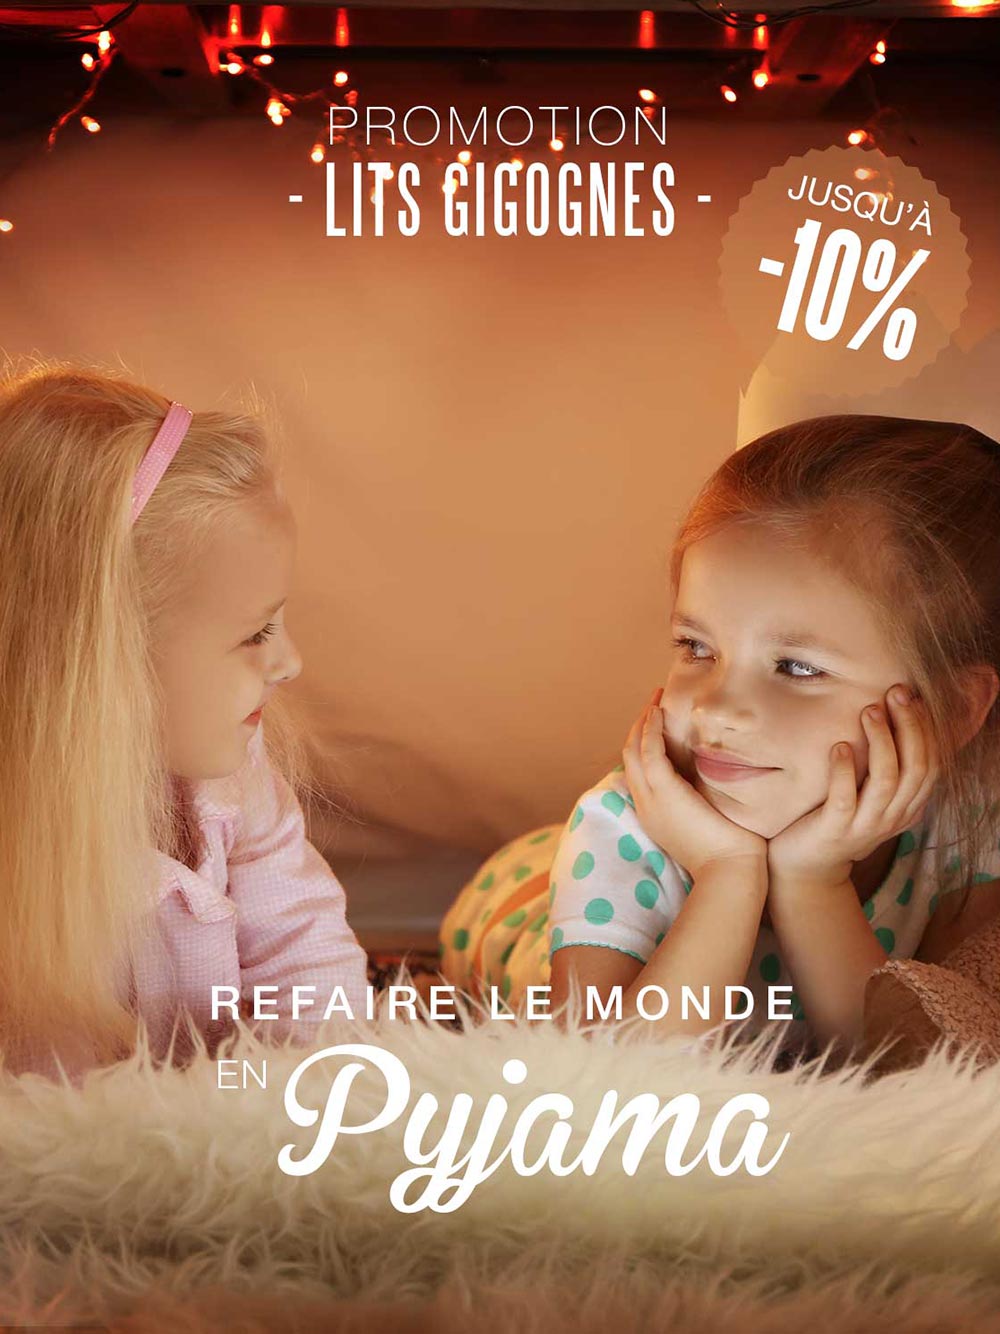 Campagne digitale lits gigognes Petite Chambre